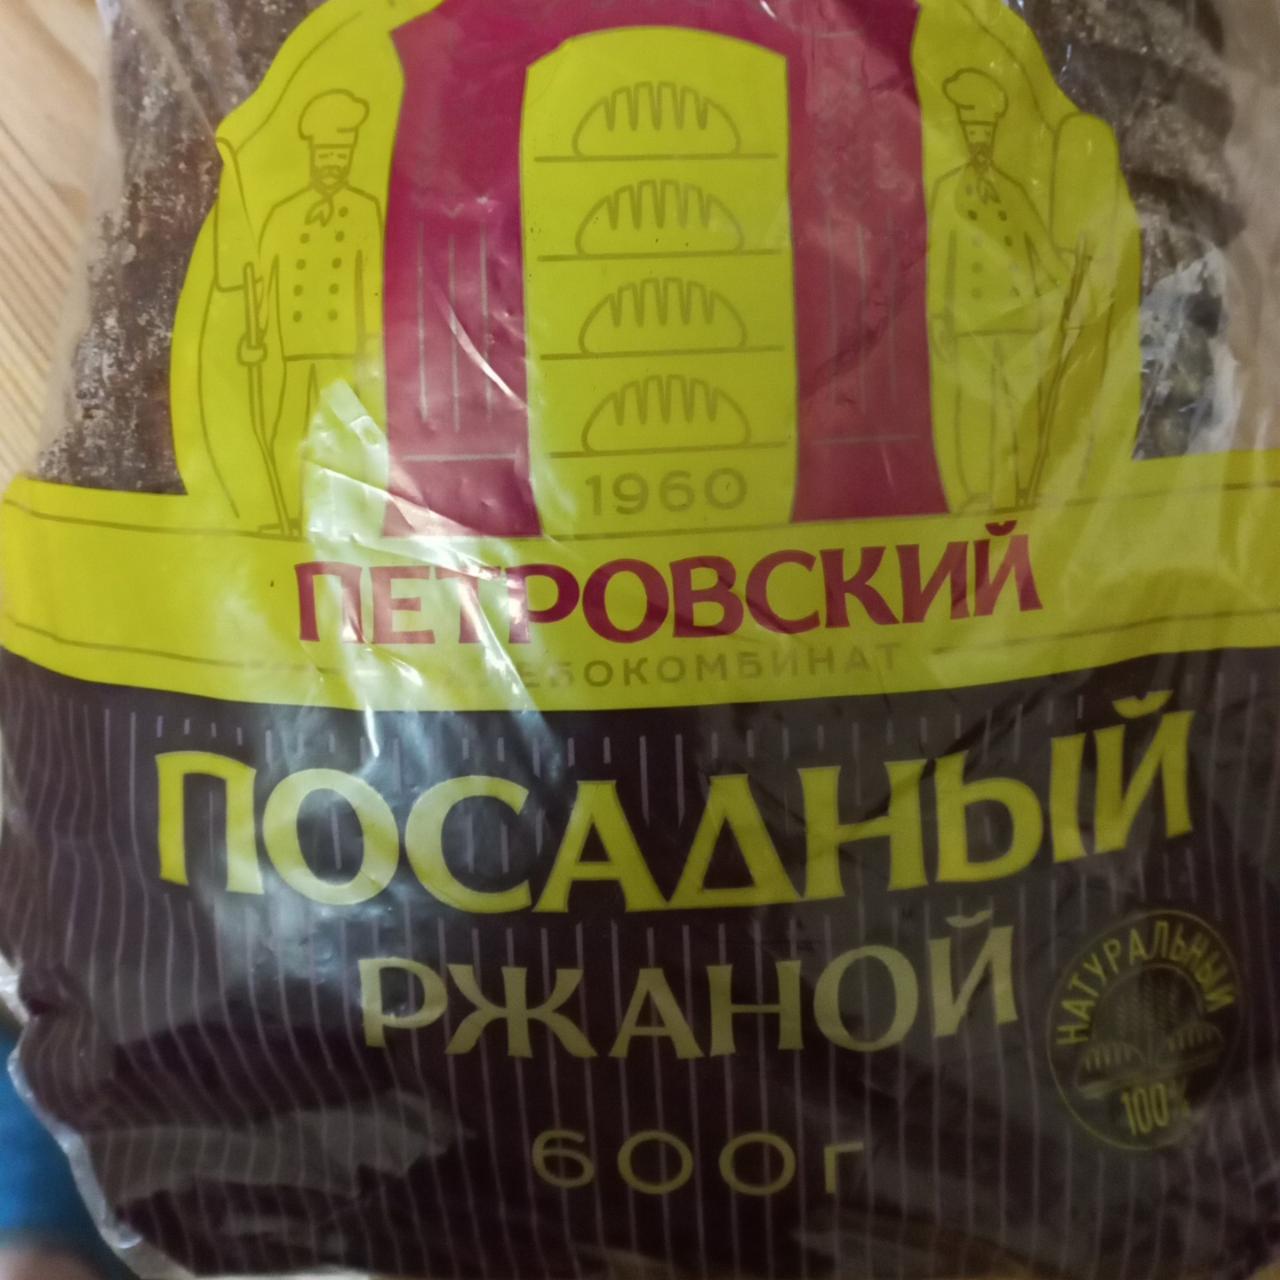 Фото - хлеб ржаной Посадный Петровский хлебокомбинат